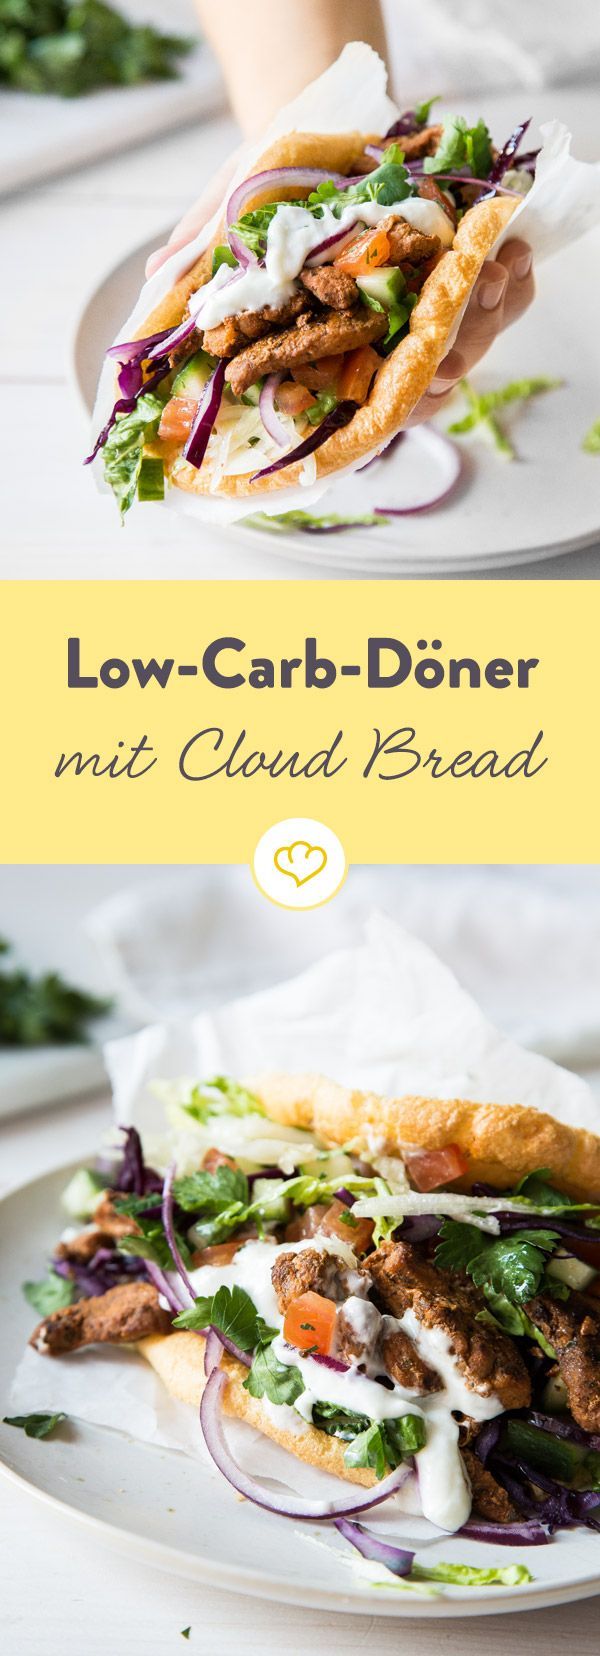 Low-Carb-D?ner mit Cloud Bread -   17 fitness Rezepte kalorienarm ideas